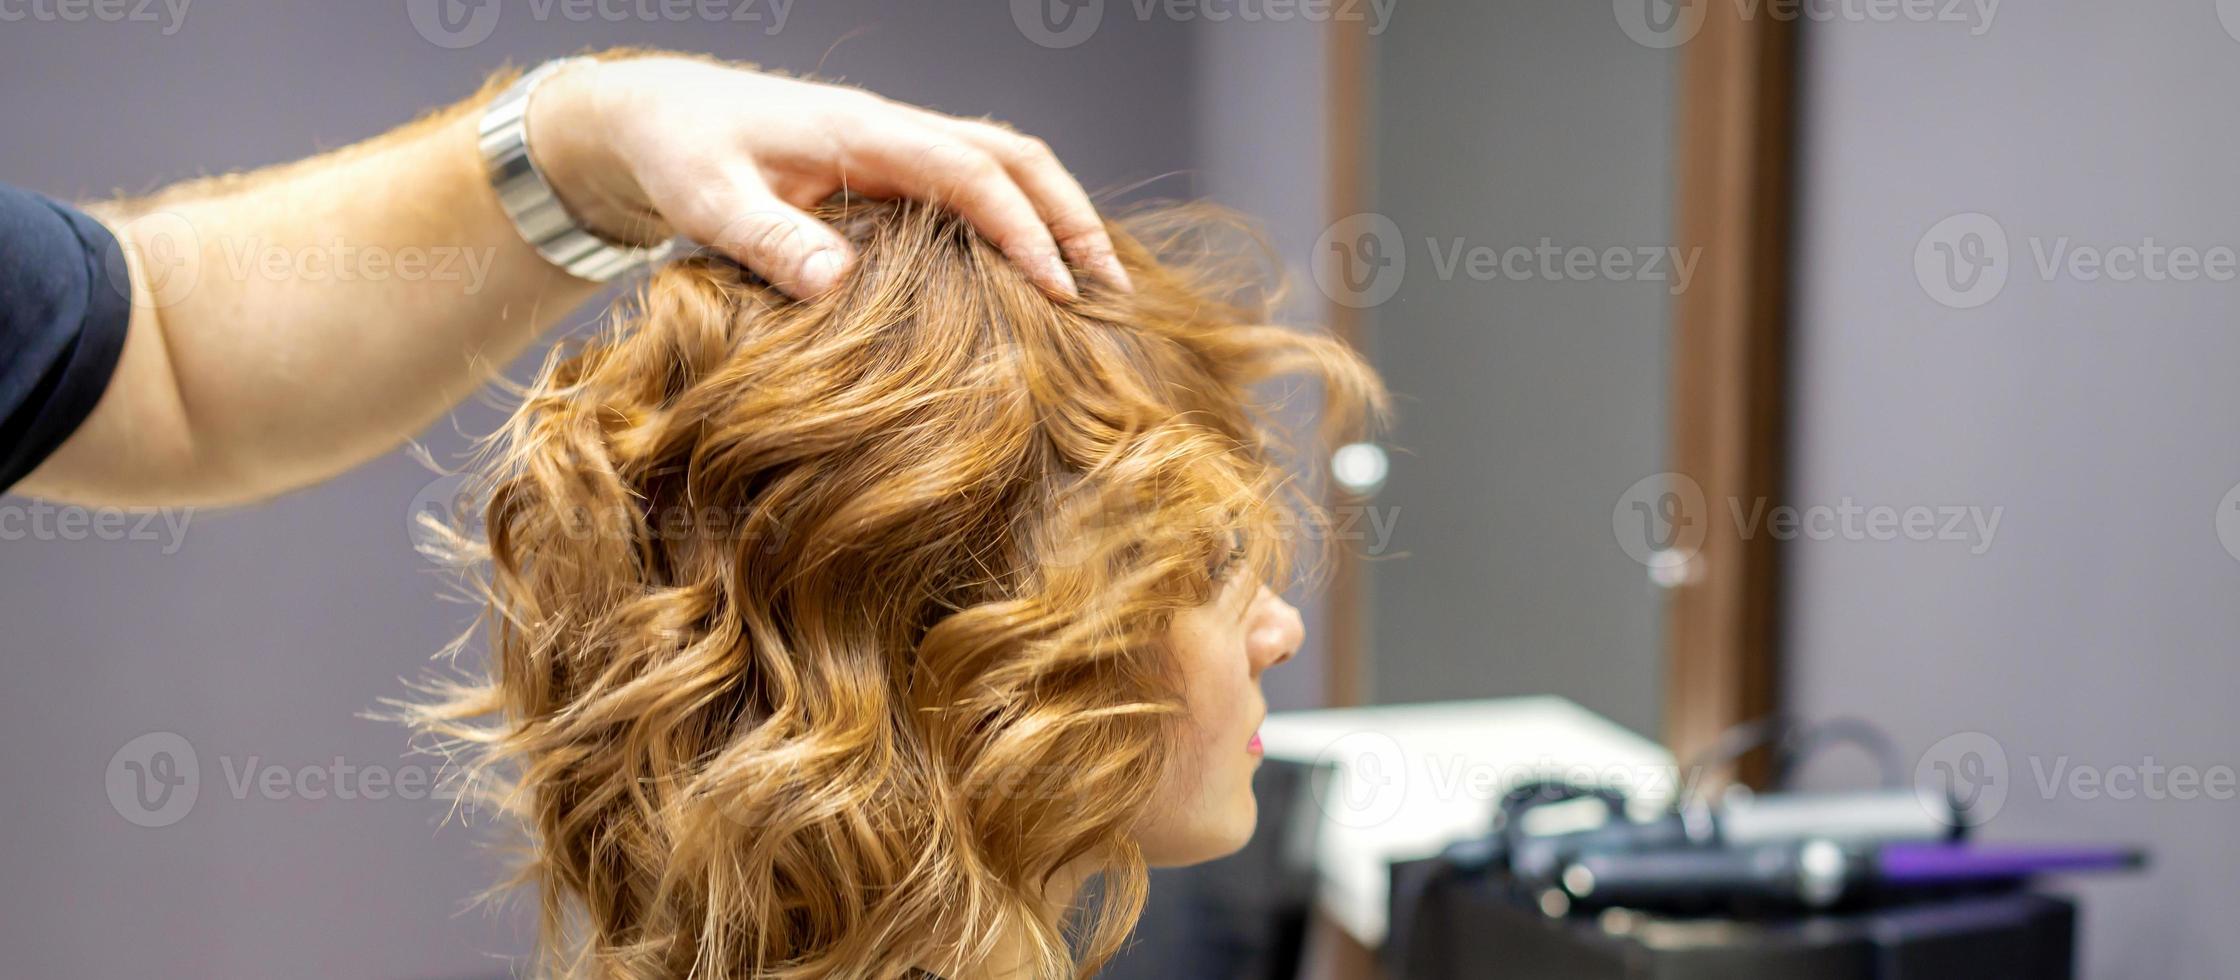 cabeleireiro Verificações encaracolado Penteado do mulher foto